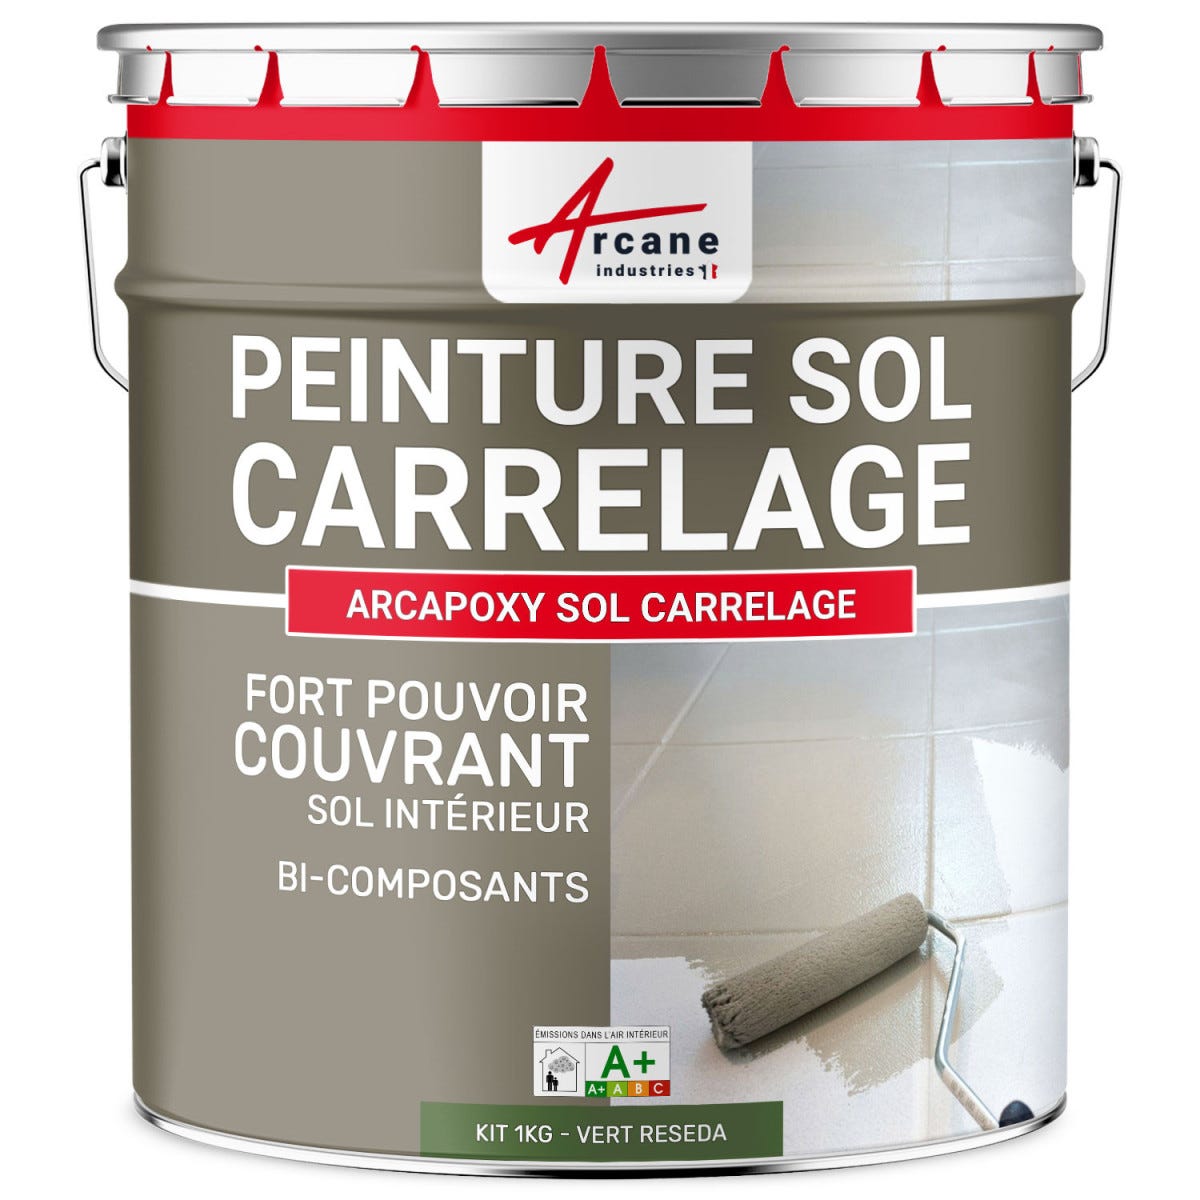 Peinture Résine Sol Carrelage - ARCAPOXY SOL CARRELAGE - 1 kg (jusqu'à 5 m² en 2 couches) - Vert Reseda - RAL 6011 - ARCANE INDUSTRIES 0